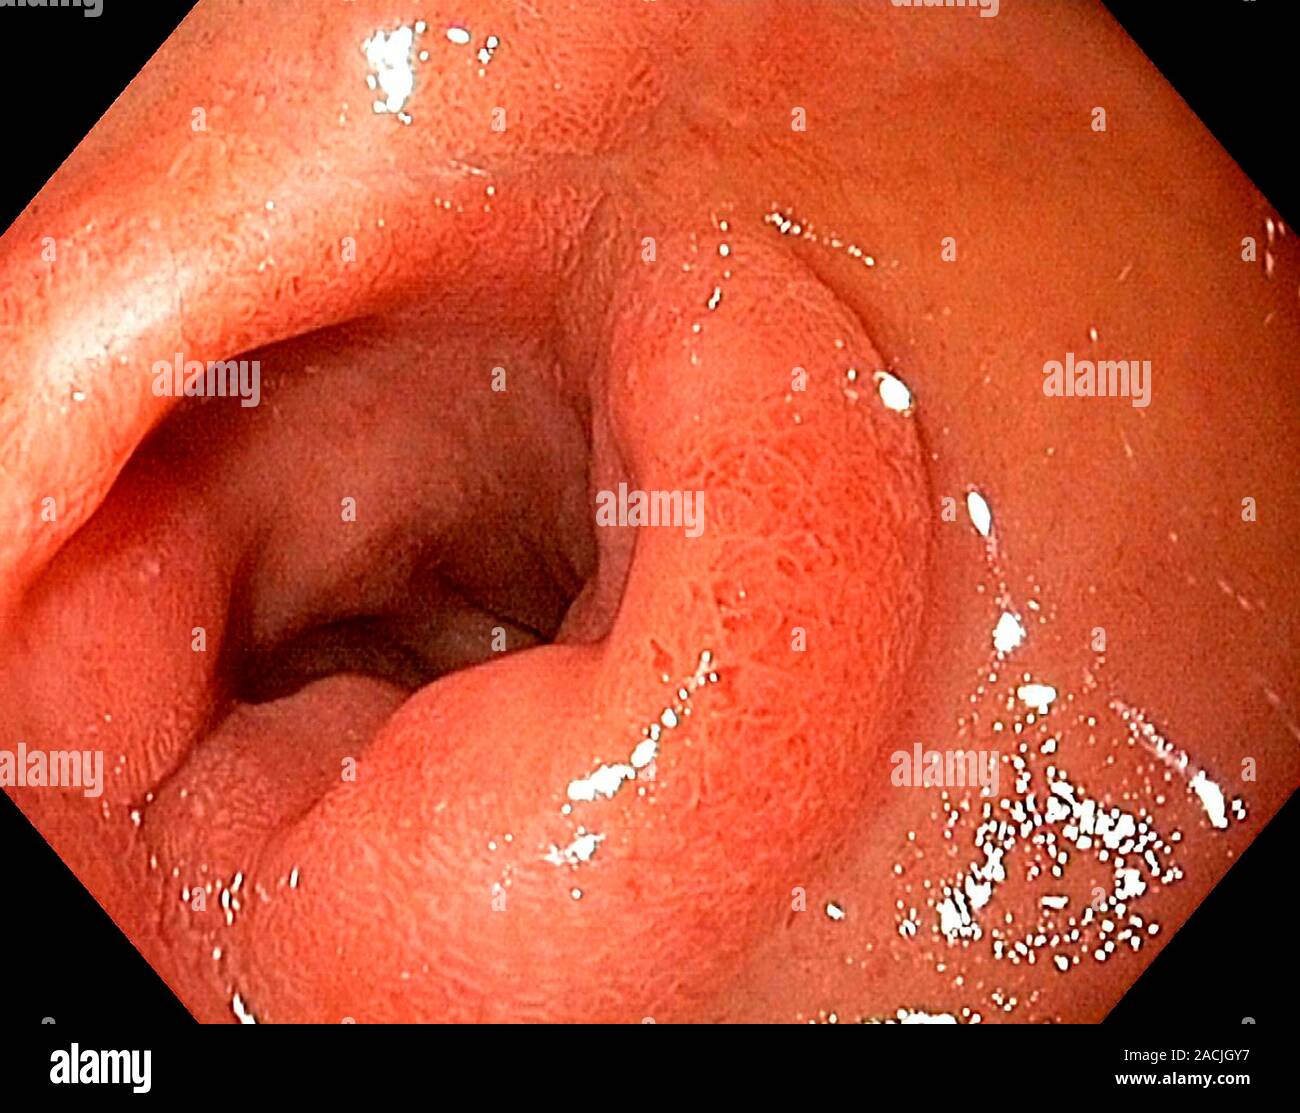 Prijs Onderdompeling dump Voir l'endoscope de la paroi du duodénum, le début de l'intestin grêle,  montrant un relief dans le bulbe duodénal causé par un ulcère Photo Stock -  Alamy